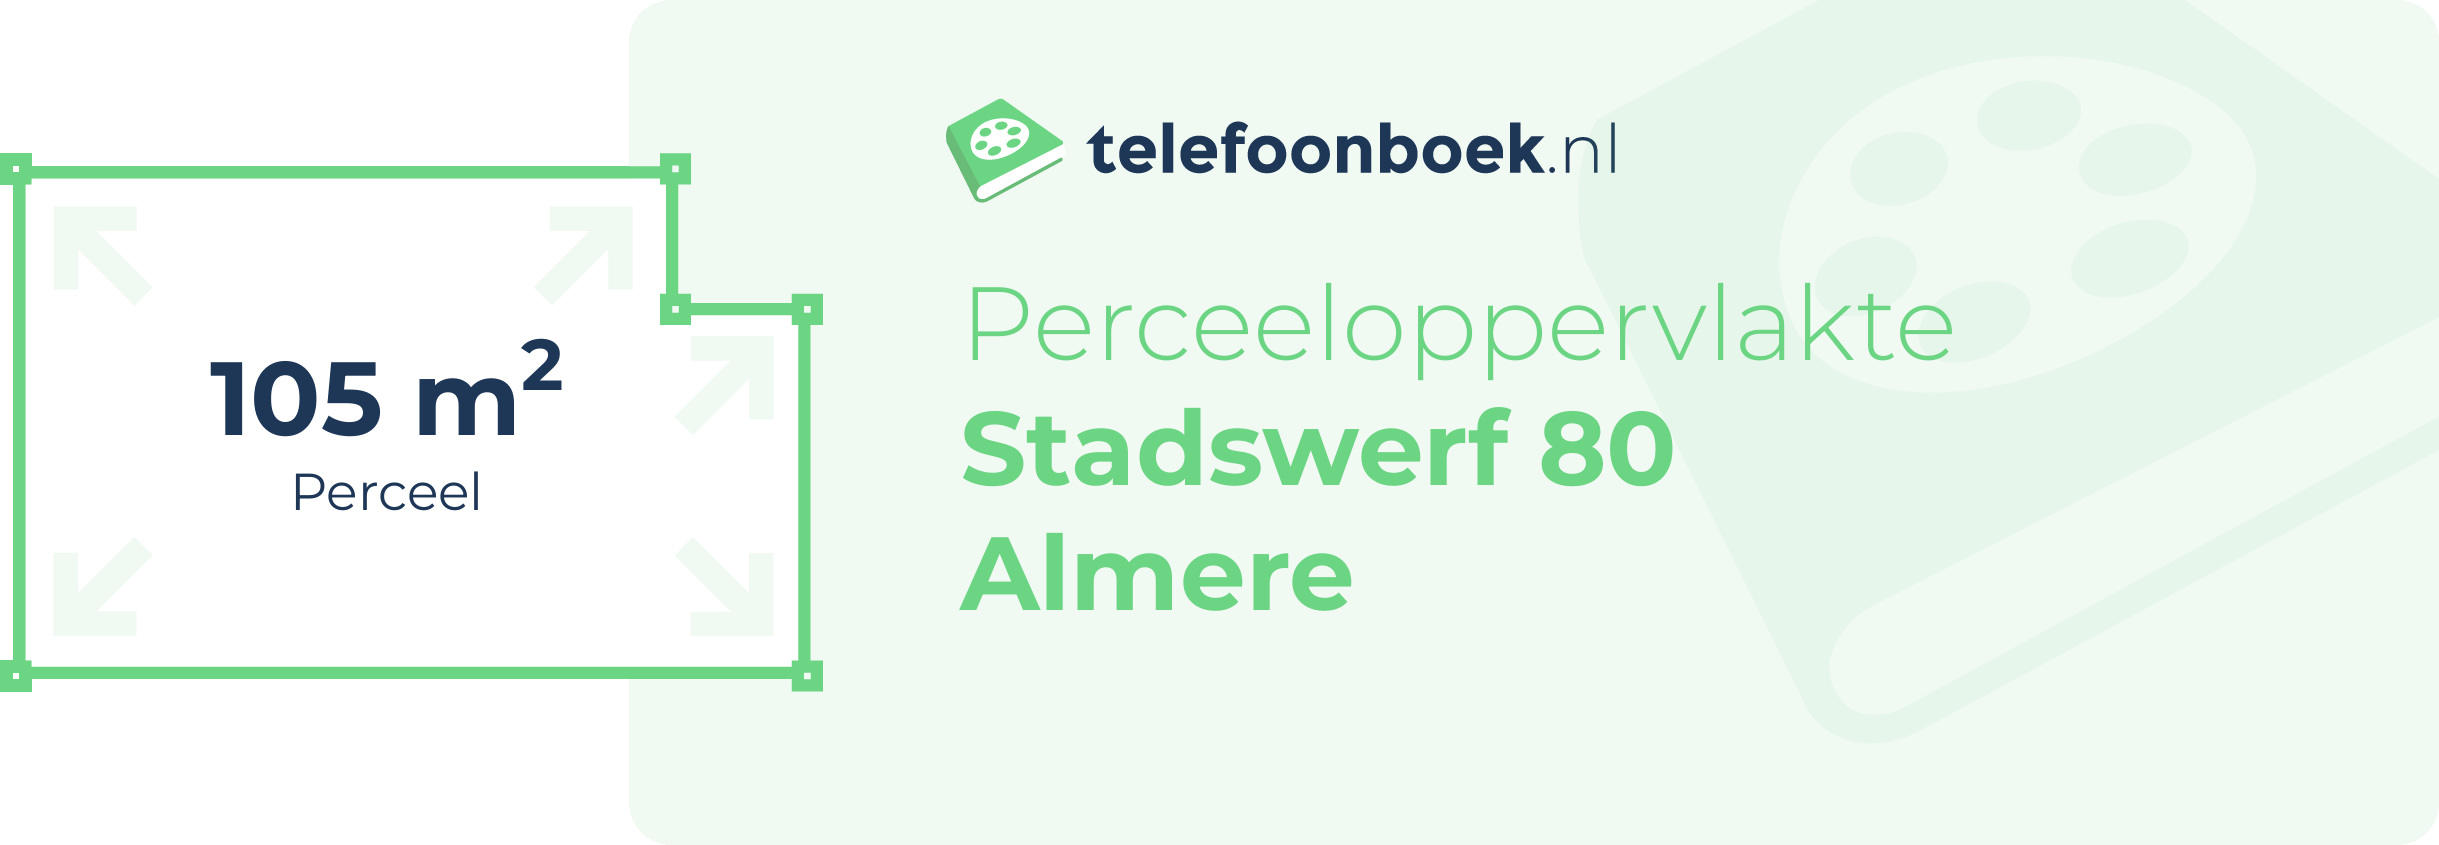 Perceeloppervlakte Stadswerf 80 Almere